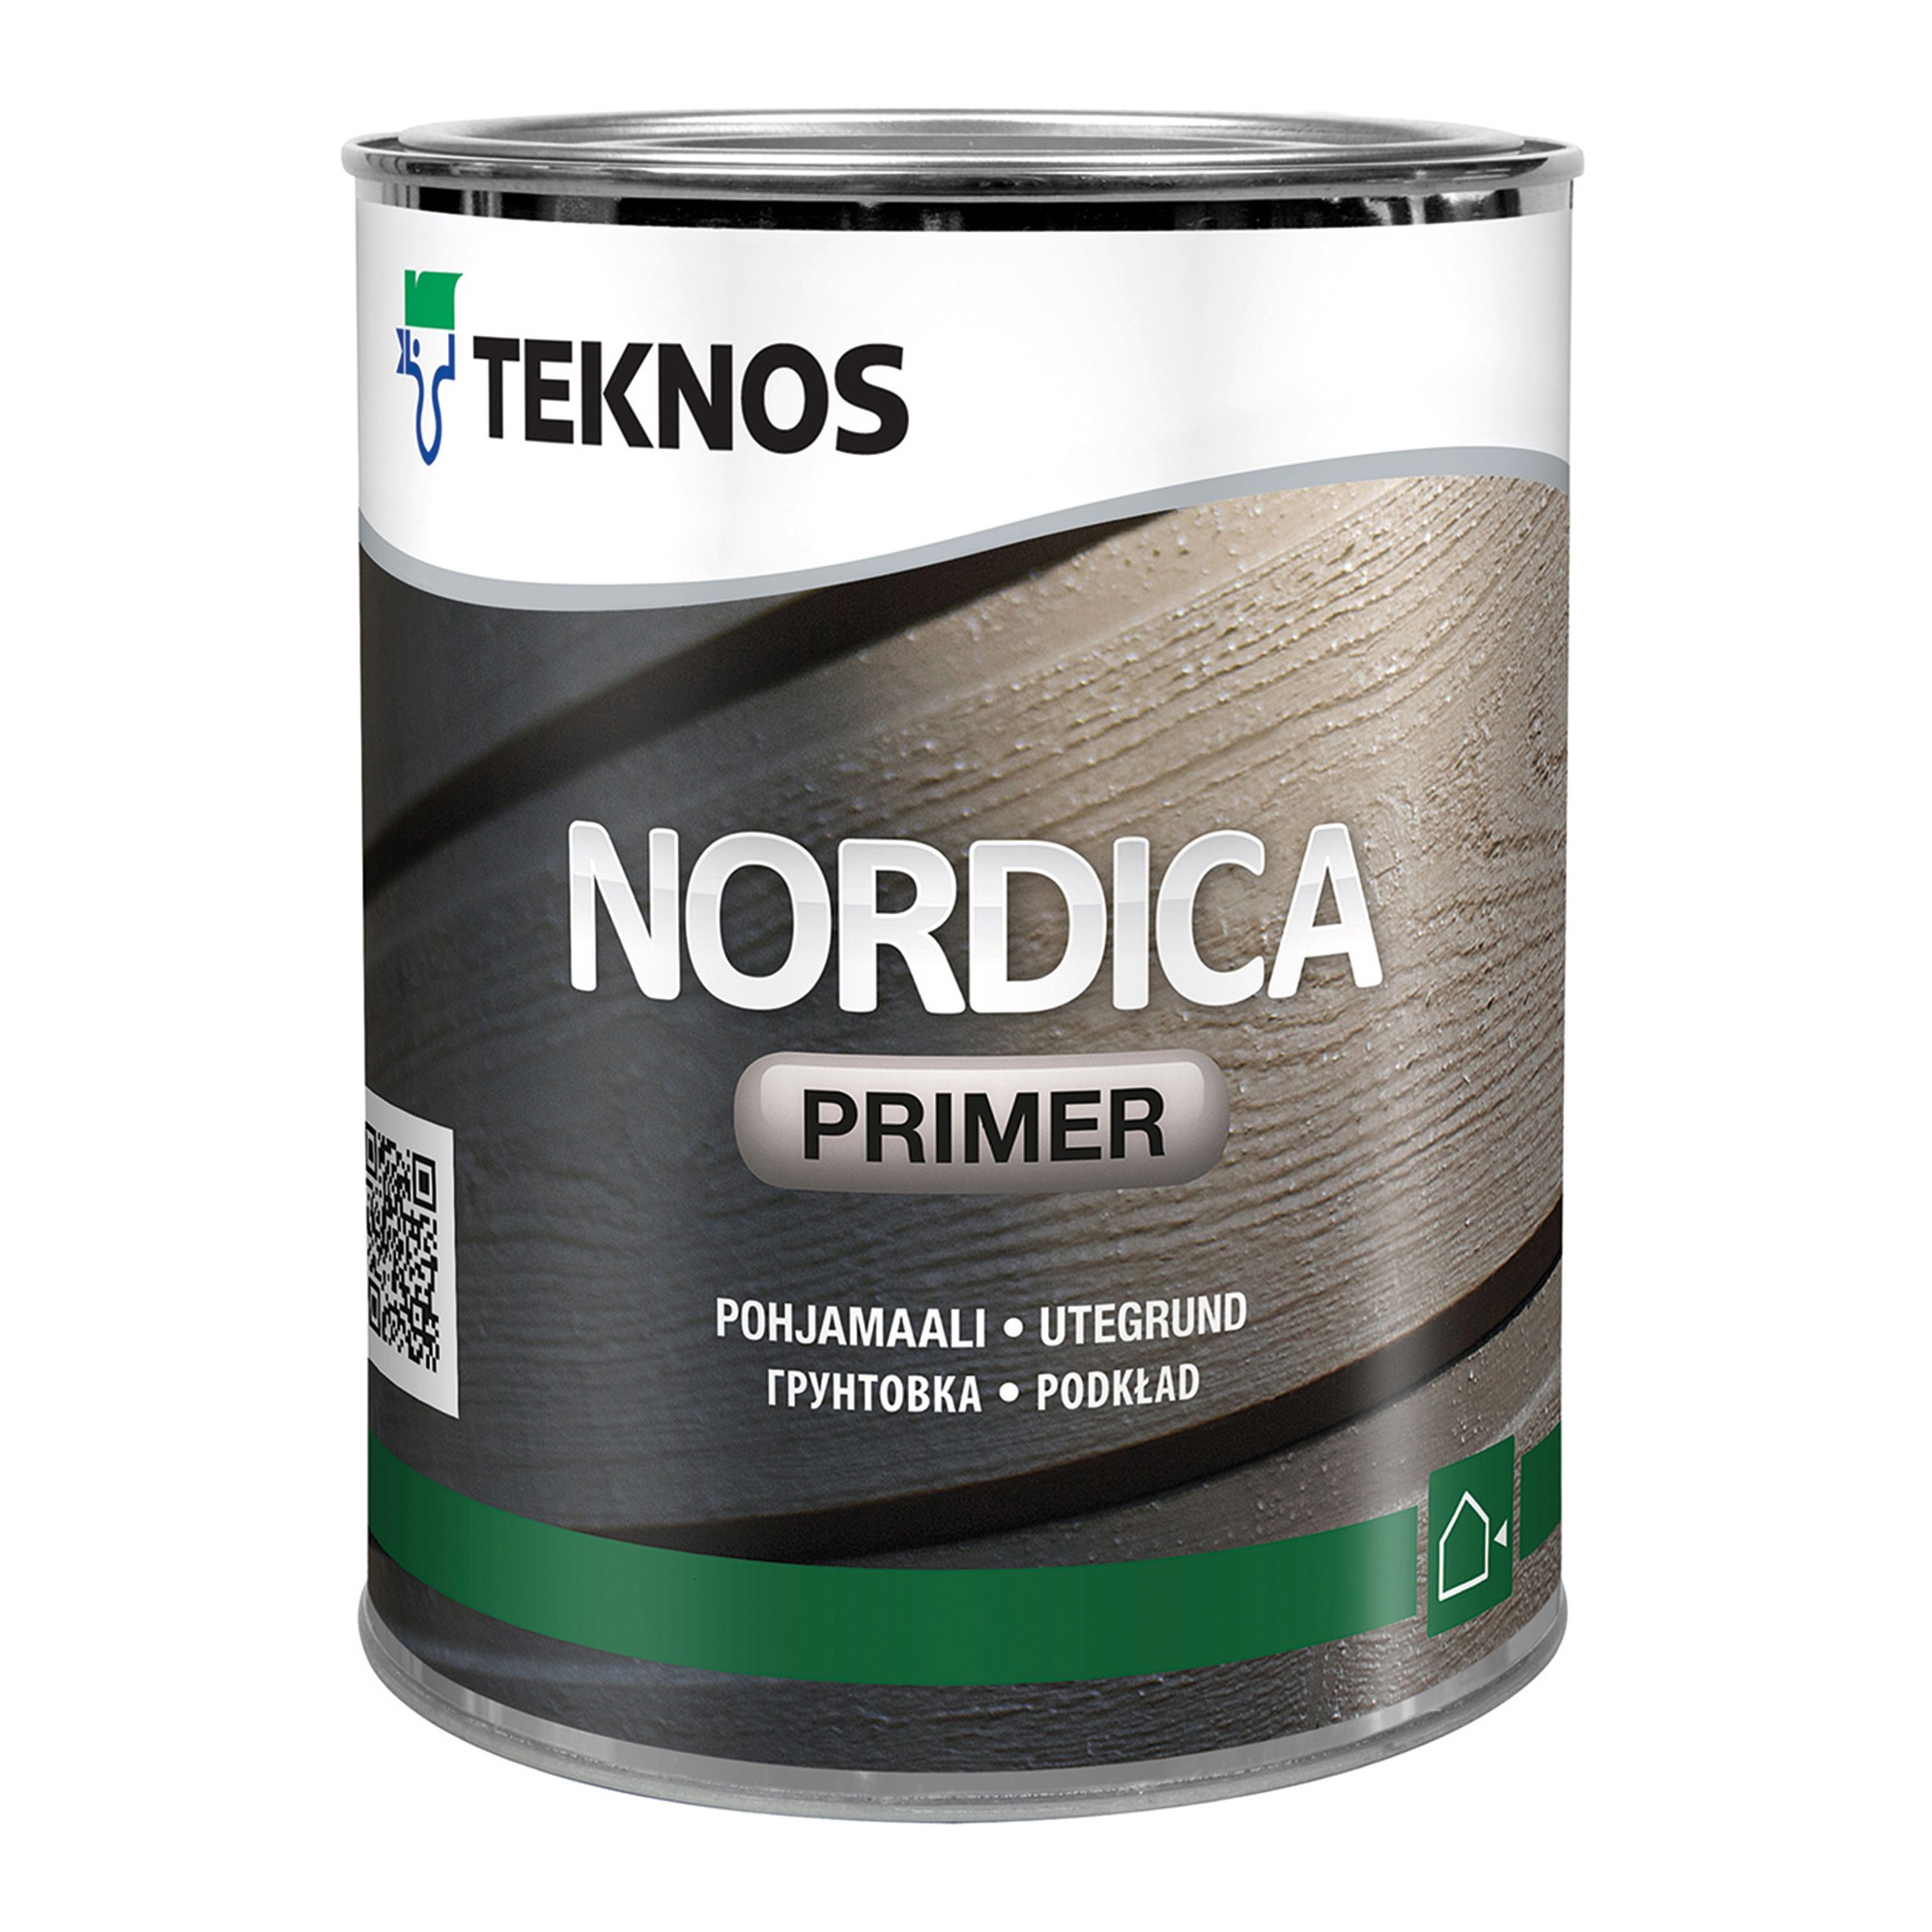 Teknos Nordica Primer прозрачная, база 3, 0.9 л, Грунтовочная краска по дереву алкидная